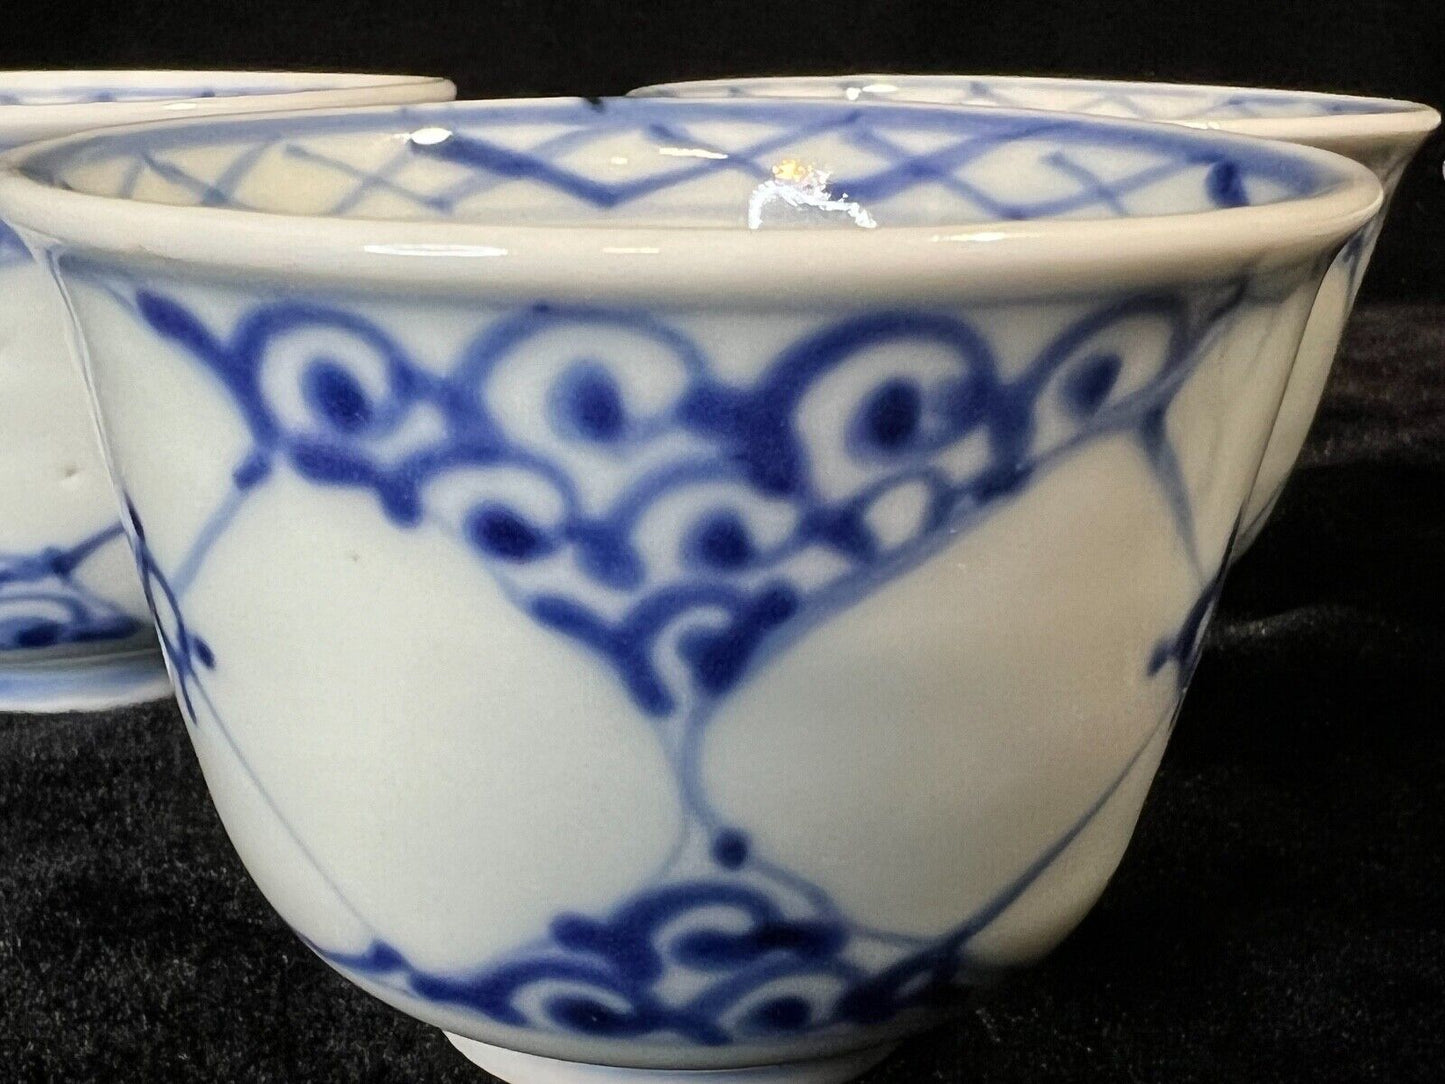 Antique Japanese Set 19Thc Imari Blue&White Hand Painted Ceramic Tea Cups 3"